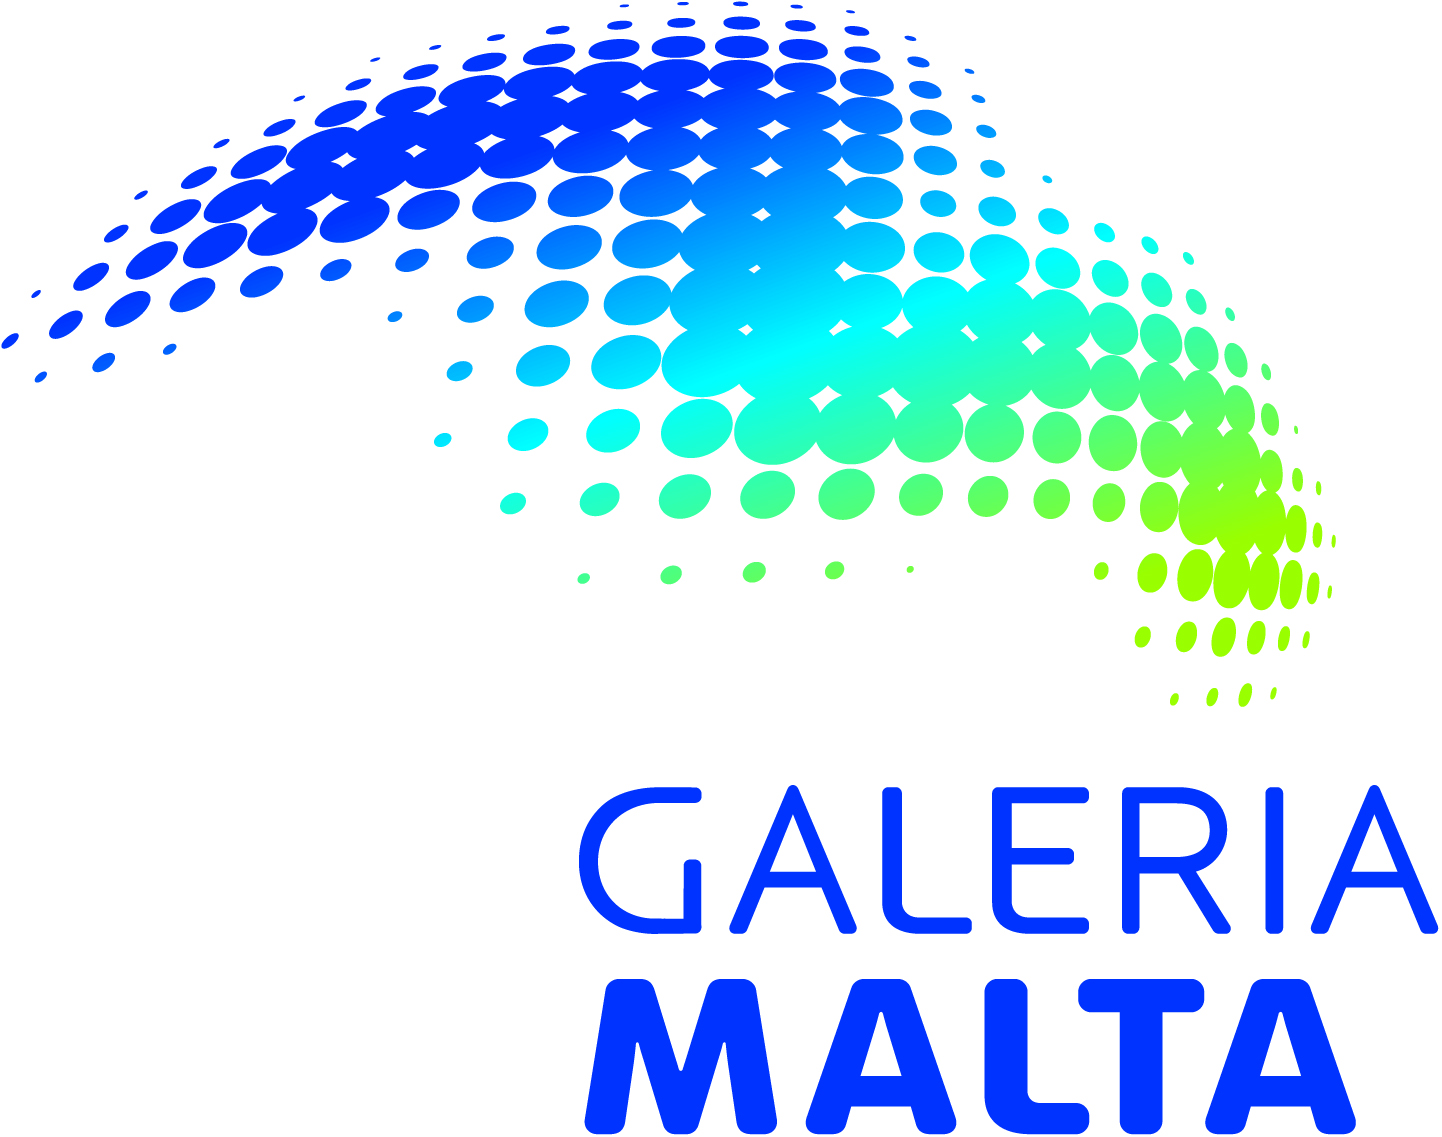 Galeria Malta